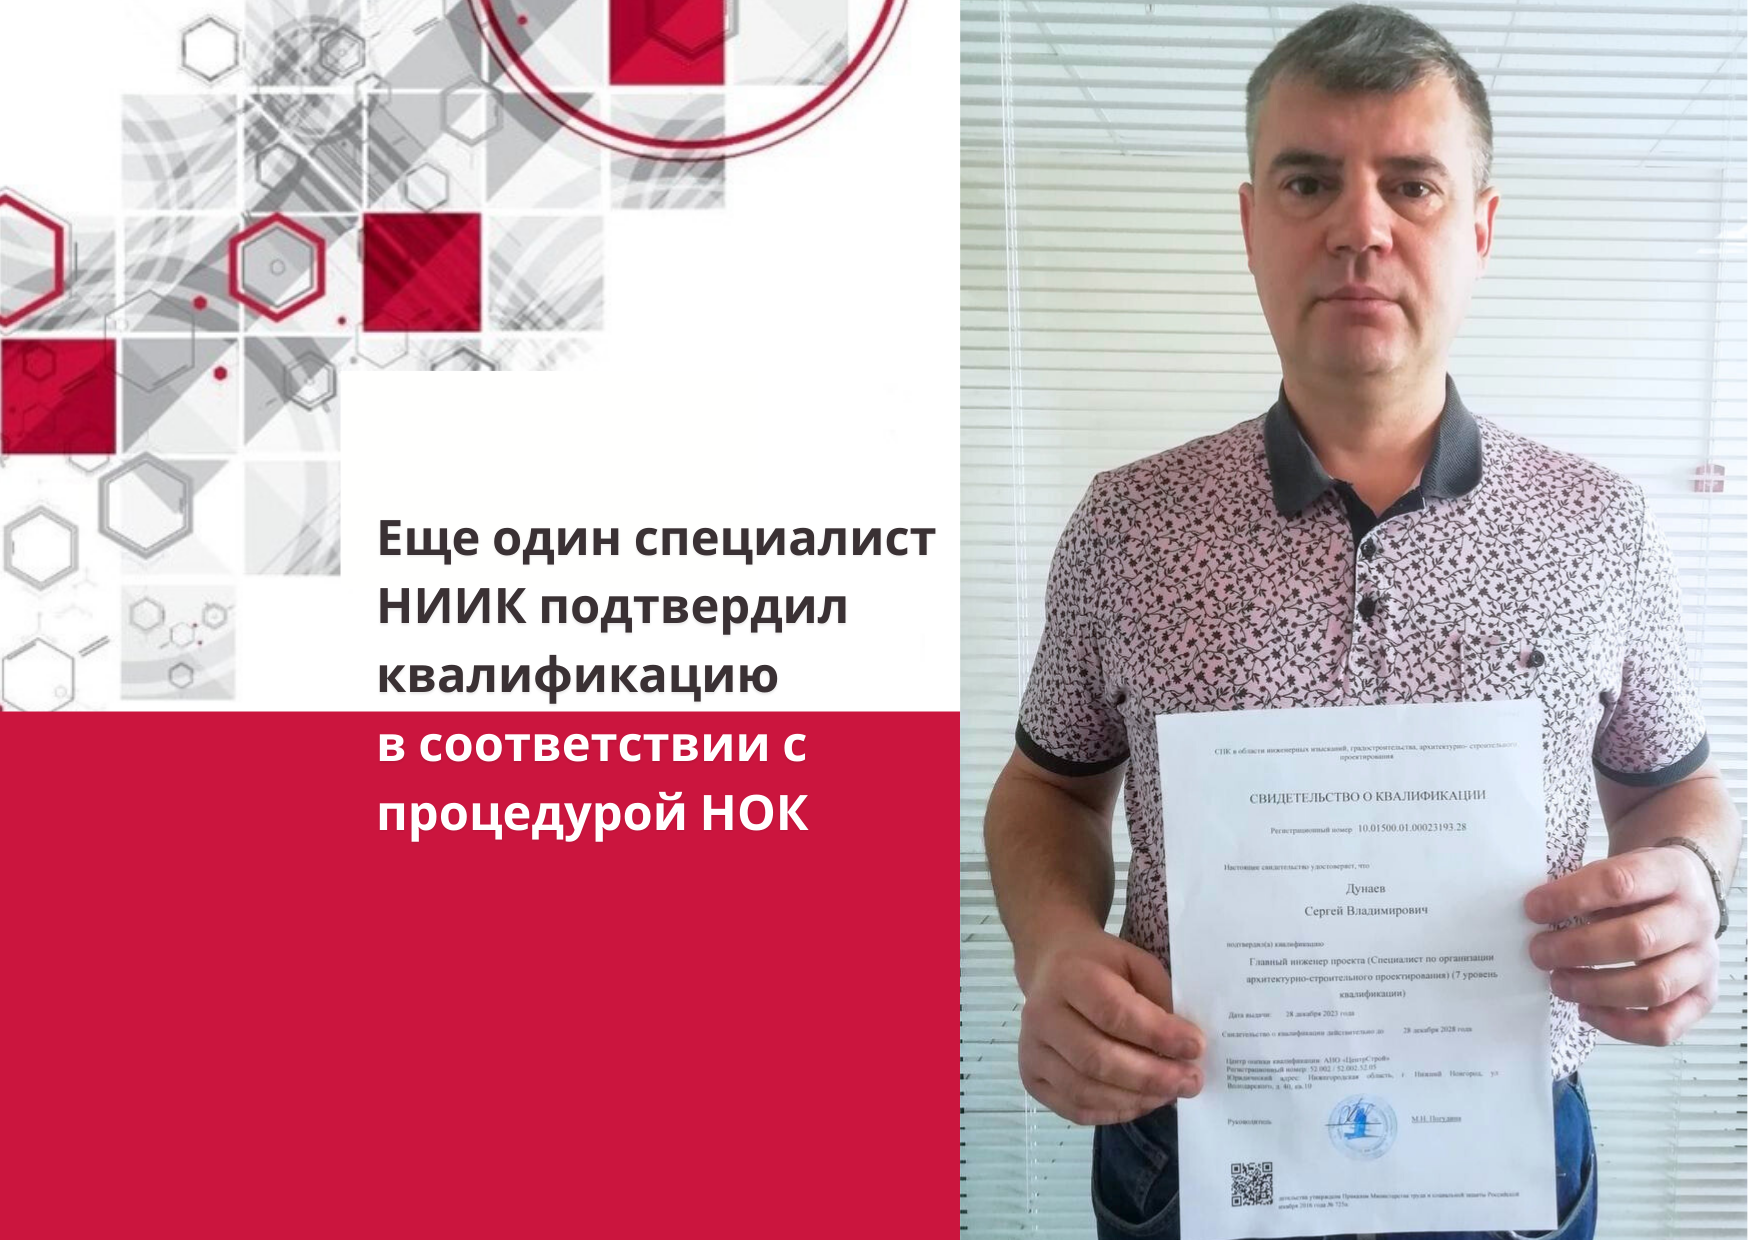 Сергей Дунаев подтвердил квалификацию по НОК